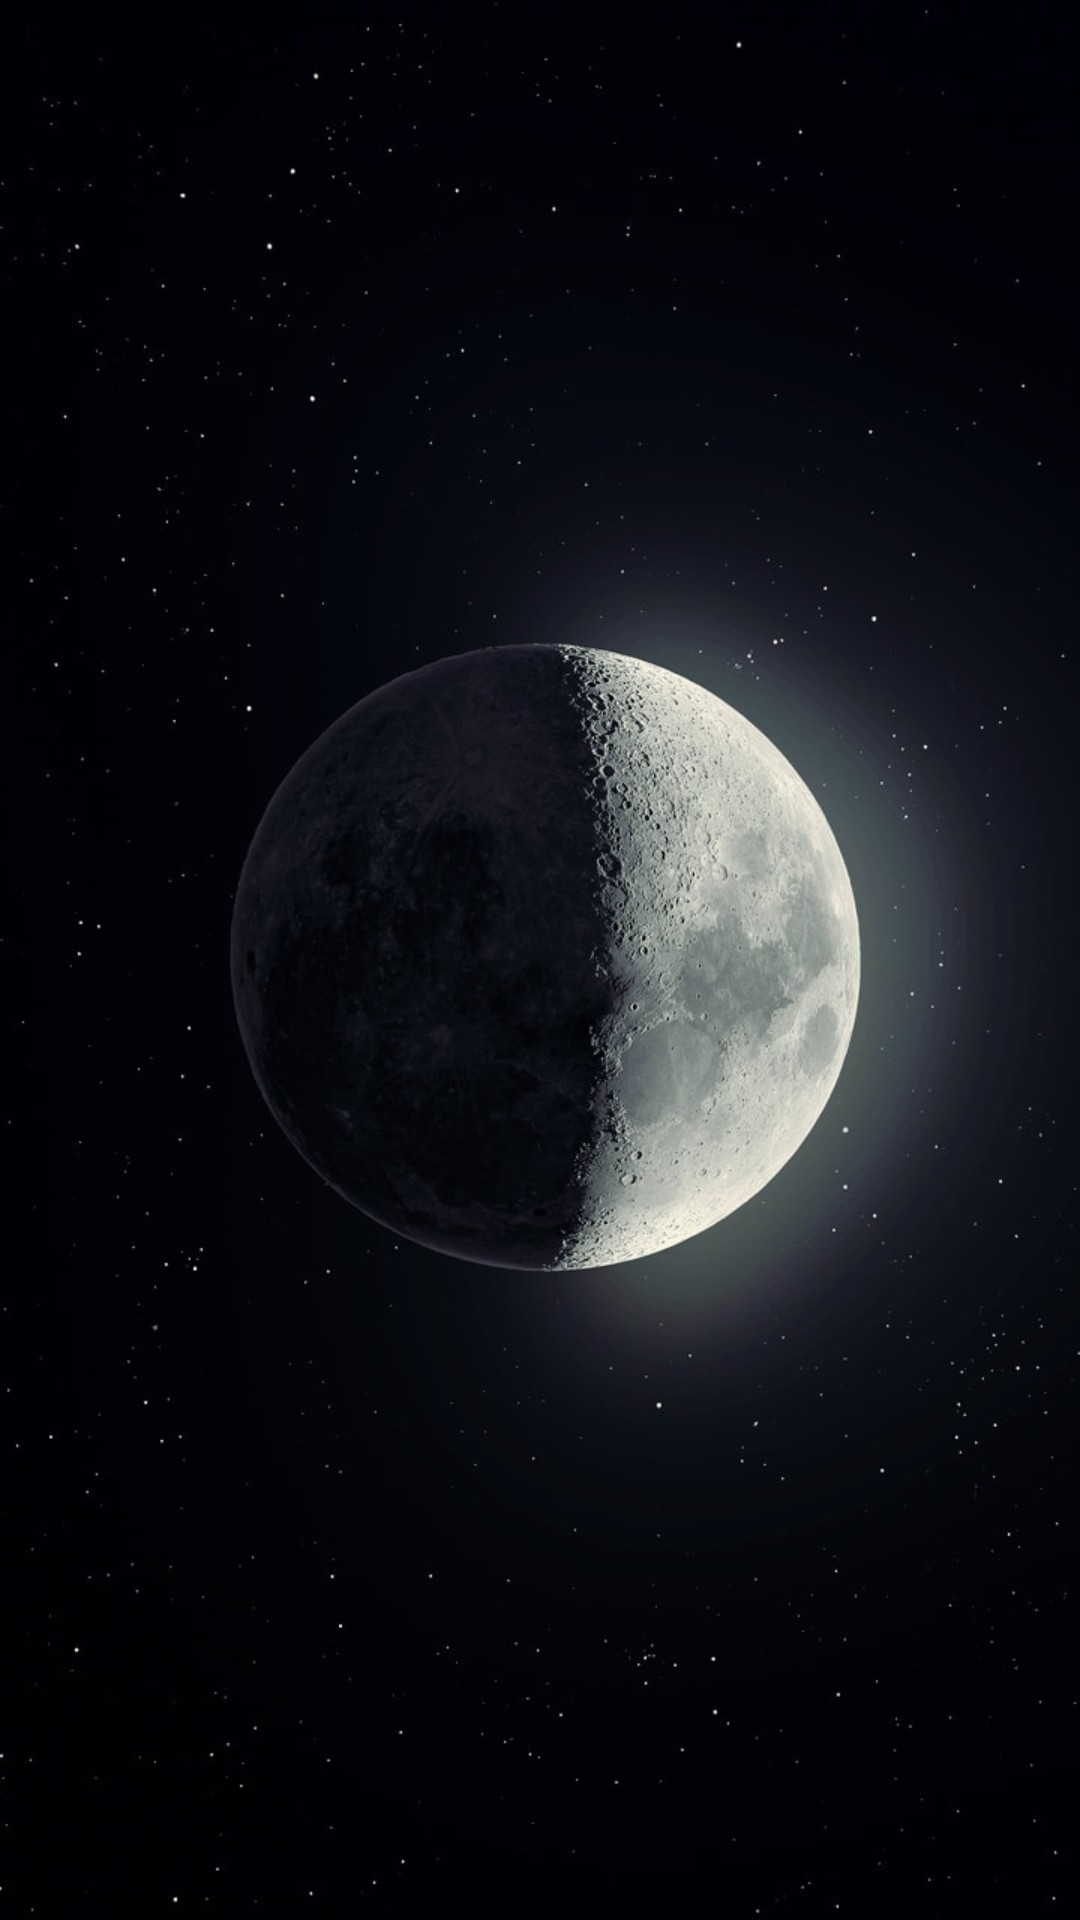 Moon Wallpapers - Top 30 Best Moon Wallpapers Download